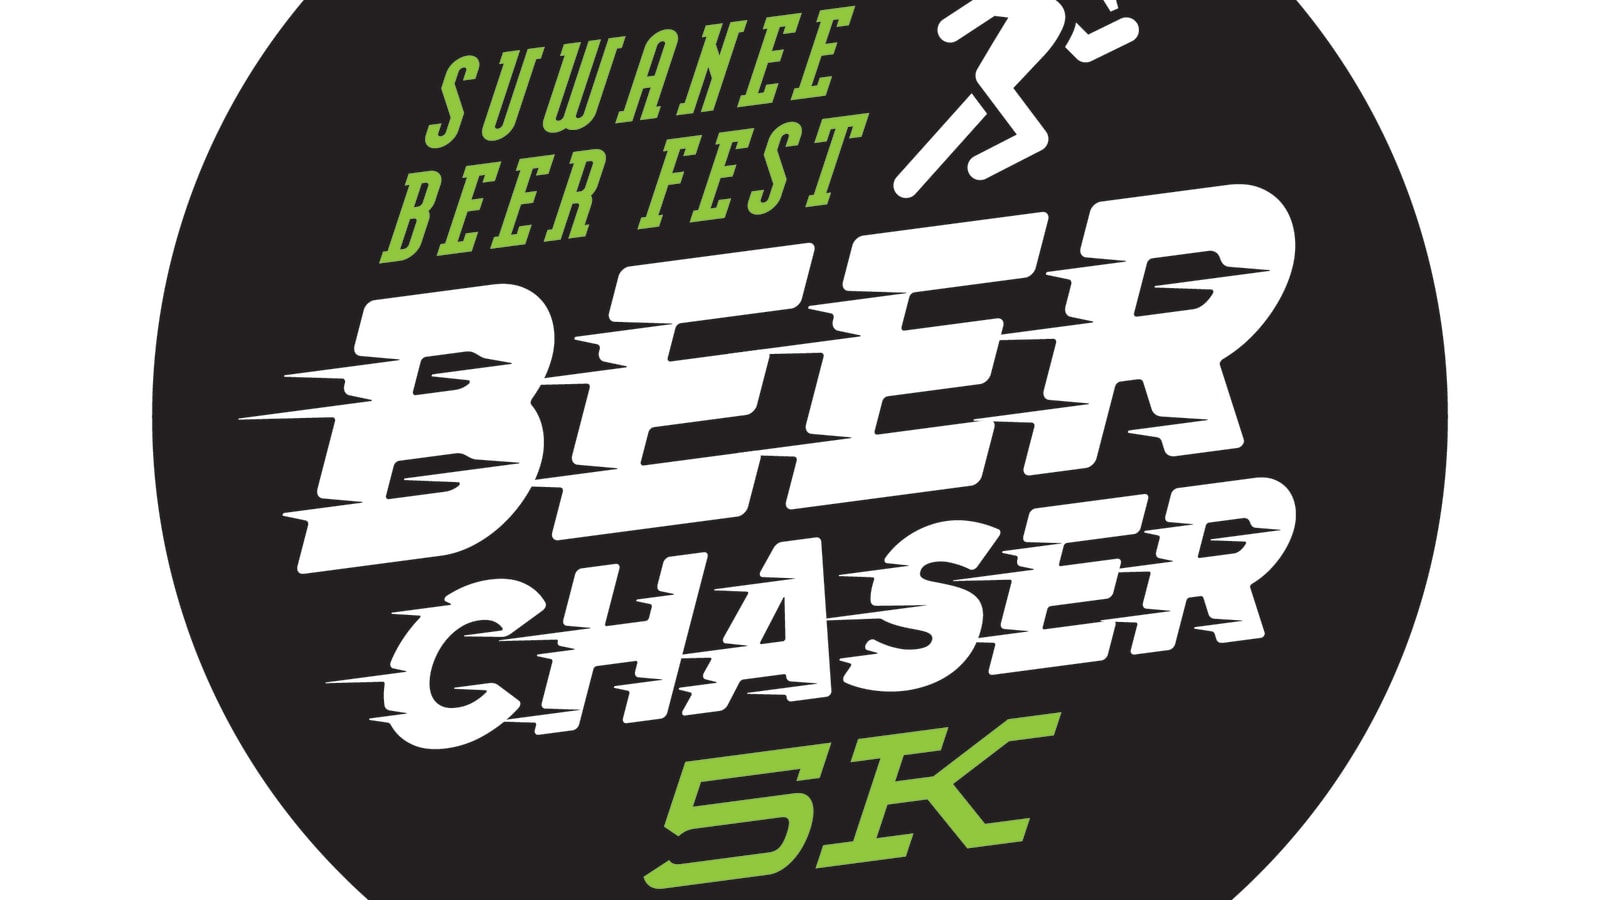 Suwanee Beer Fest Beer Chaser 5K